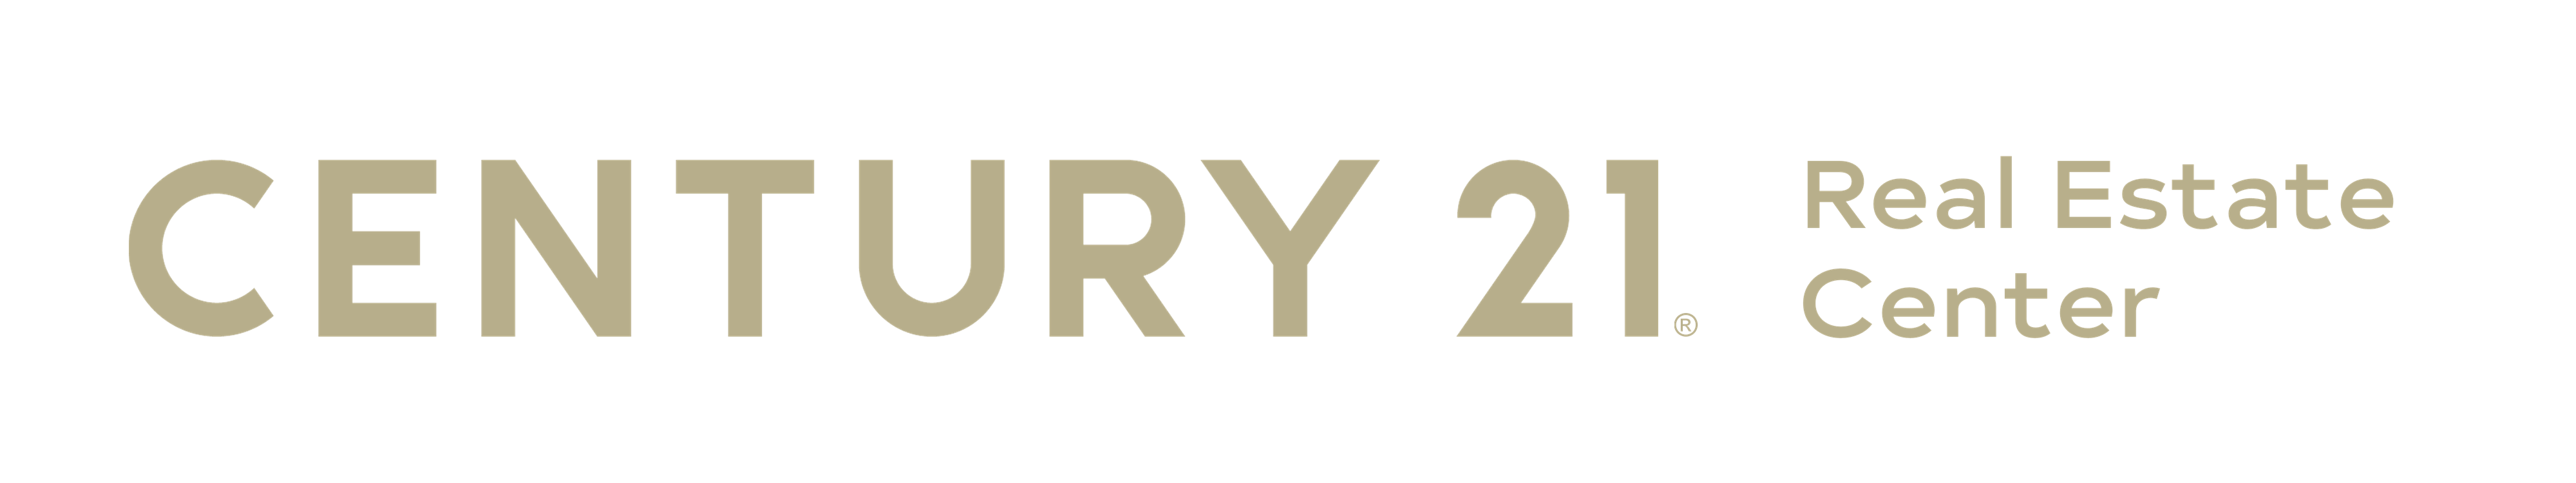 century 21 real estate logo